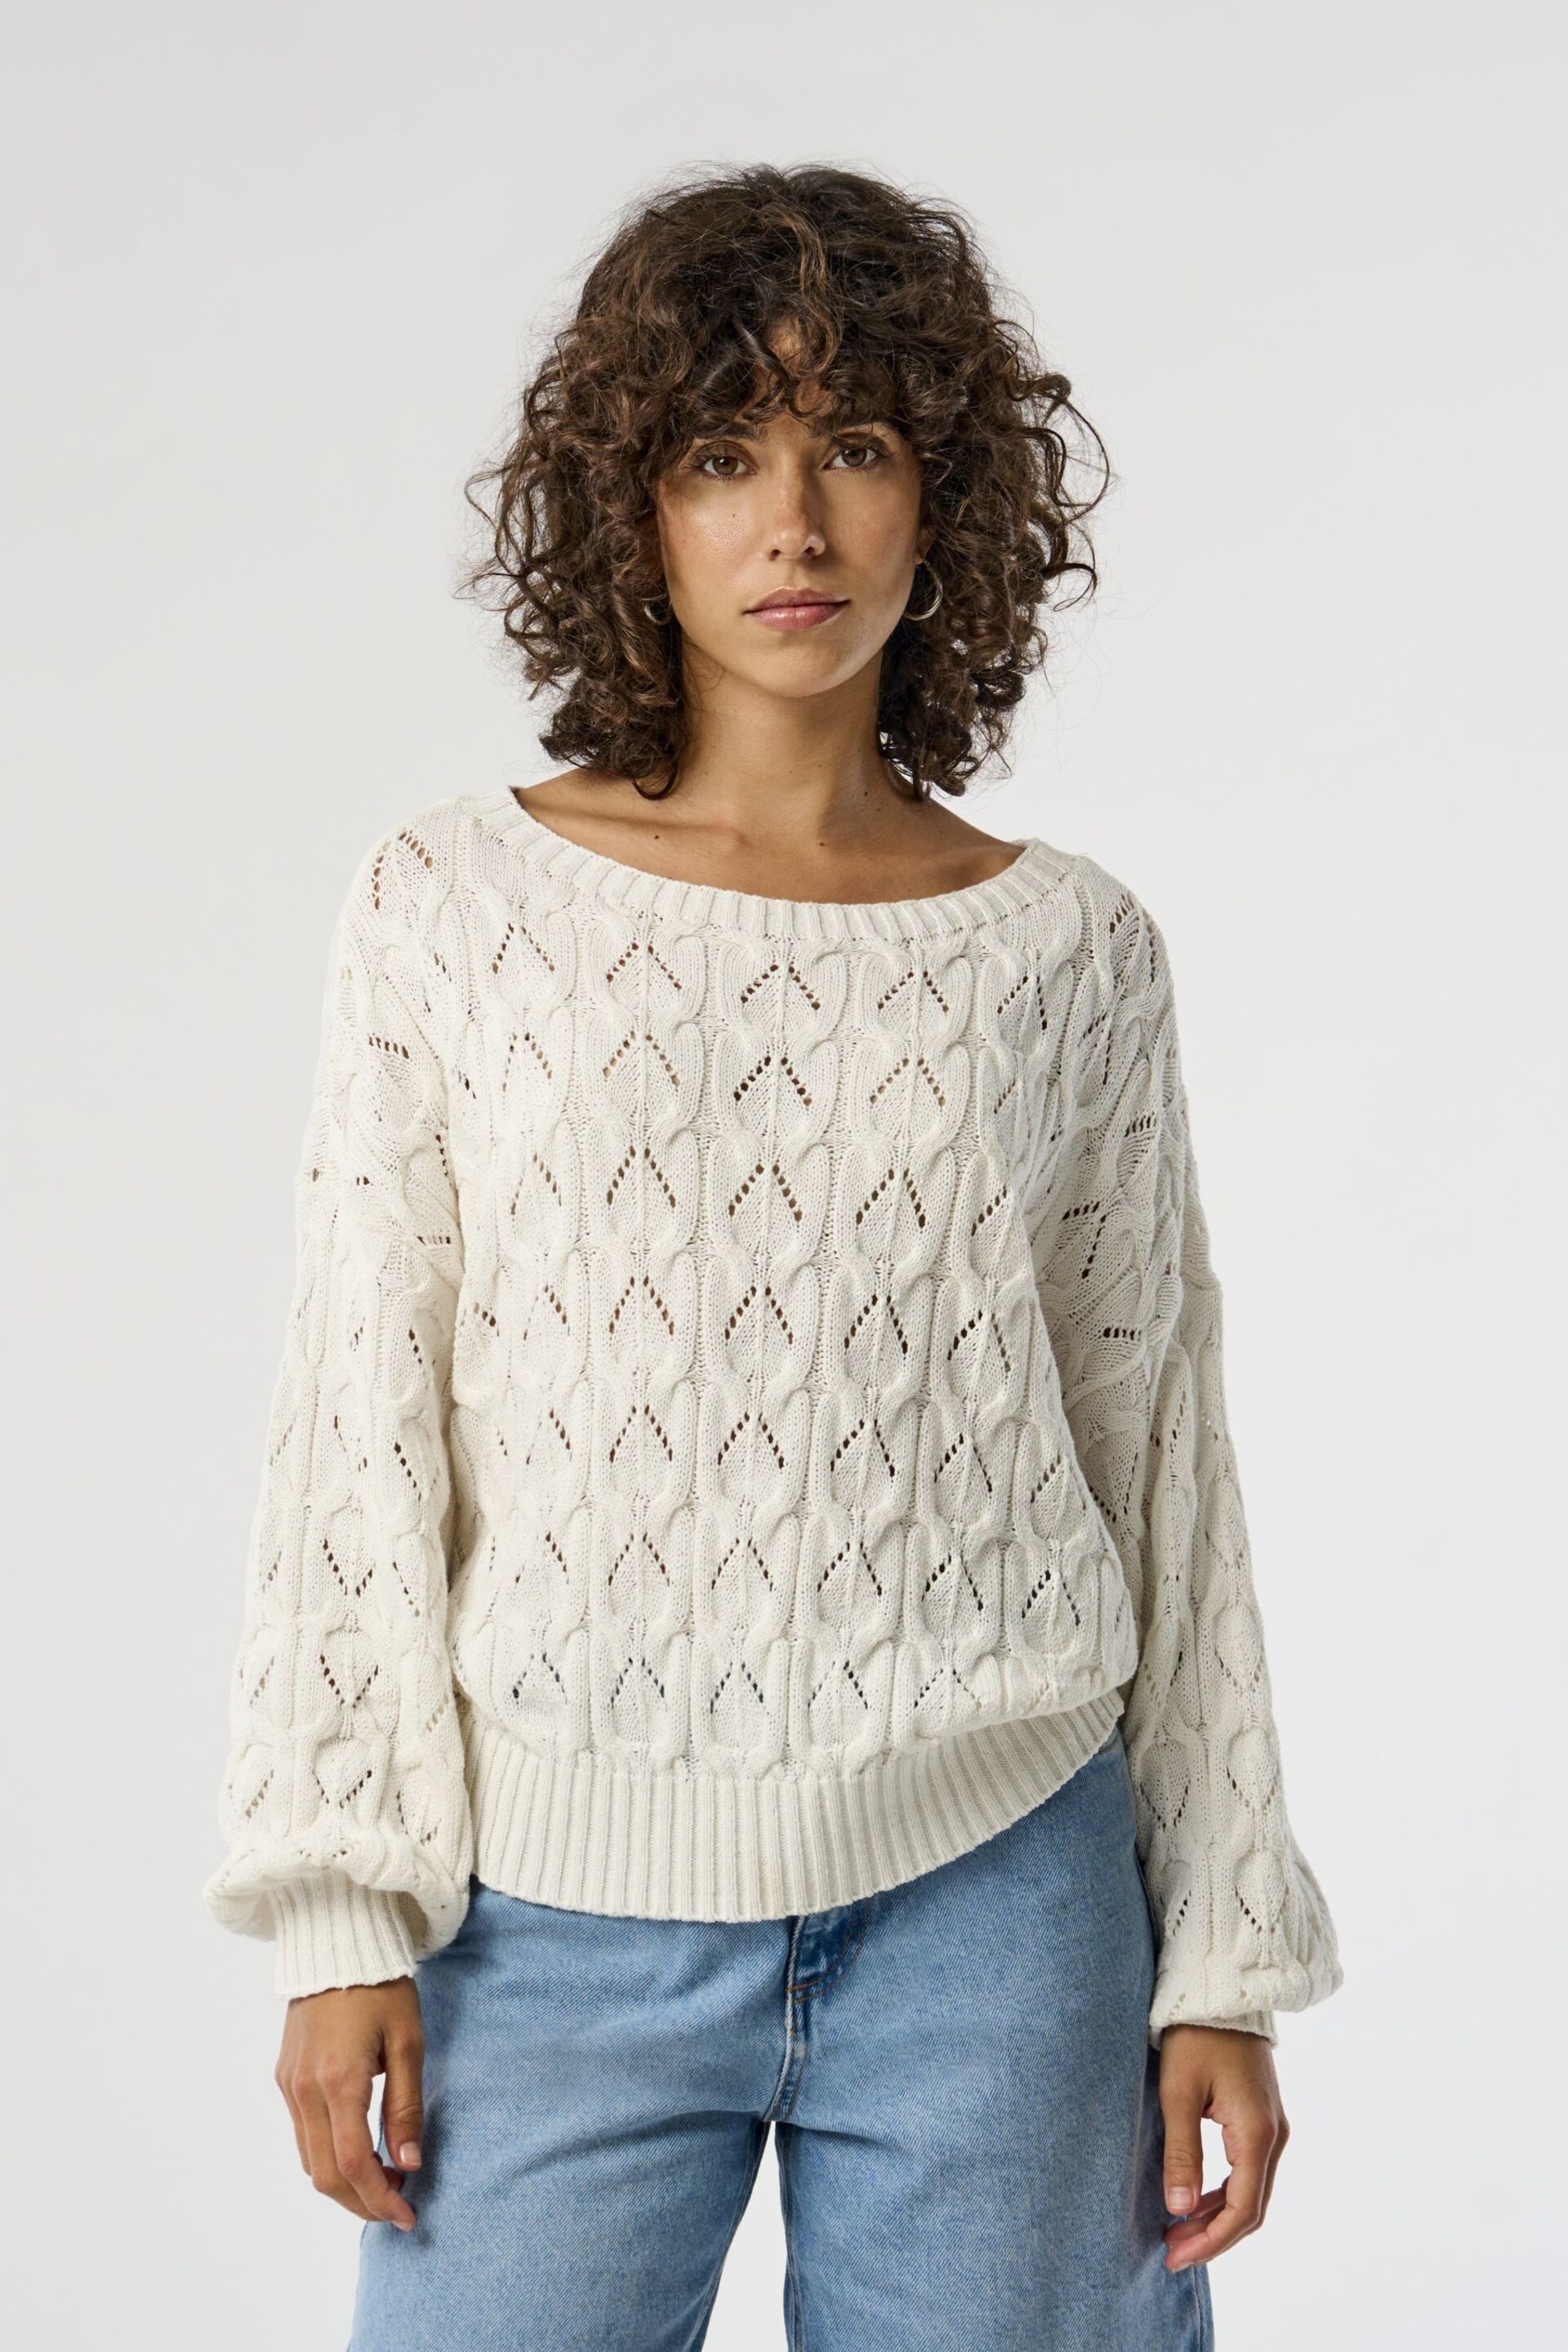 ONLY White Crochet Jumper - Image 1 of 7